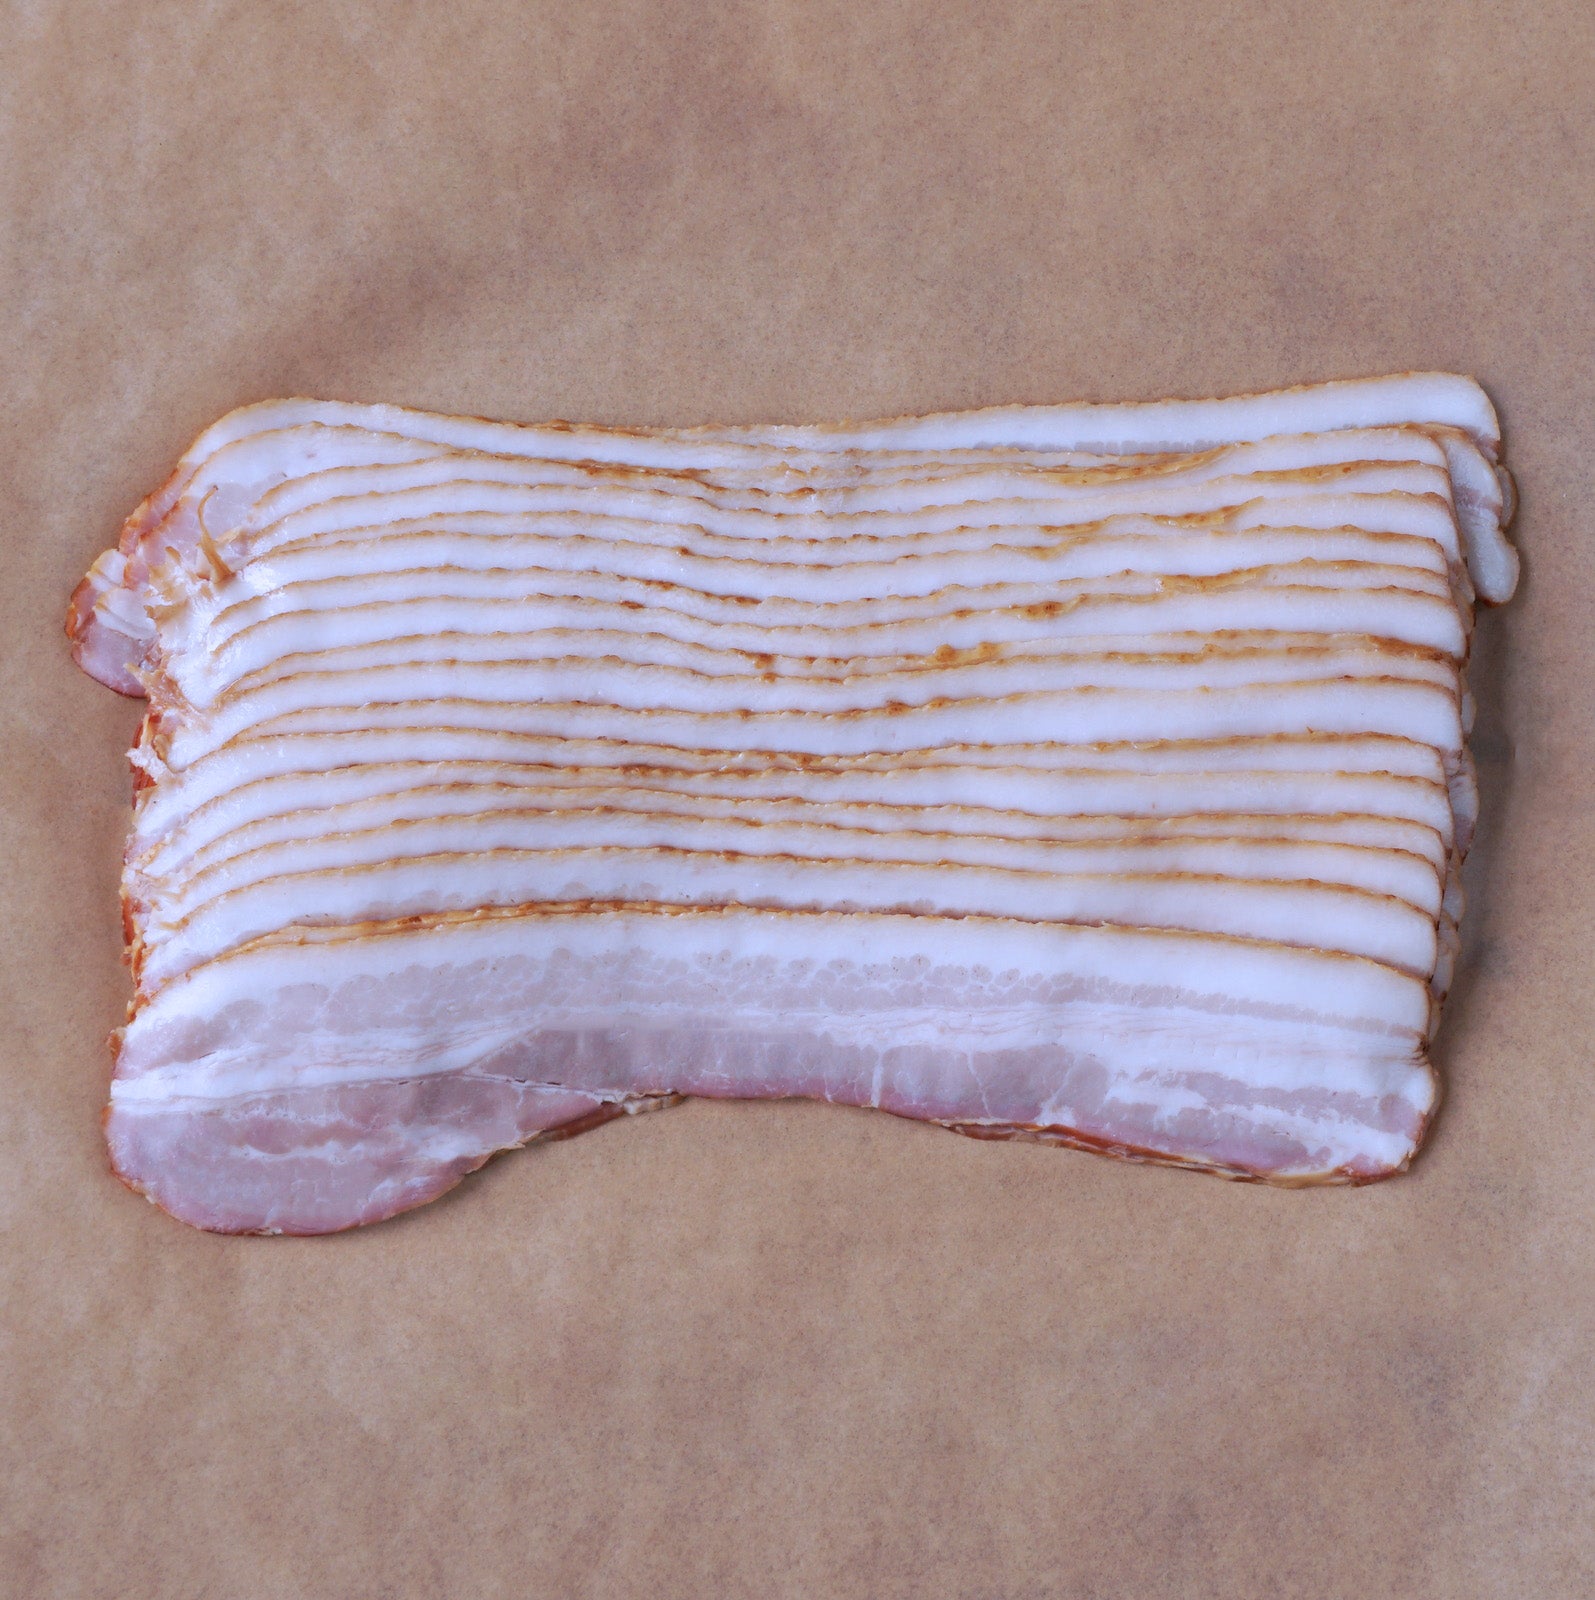 無添加 香辛料不使用 砂糖不使用 放牧豚 豚バラ スモーク アメリカンスタイル ベーコン スライス (200g) ホライズンファームズ